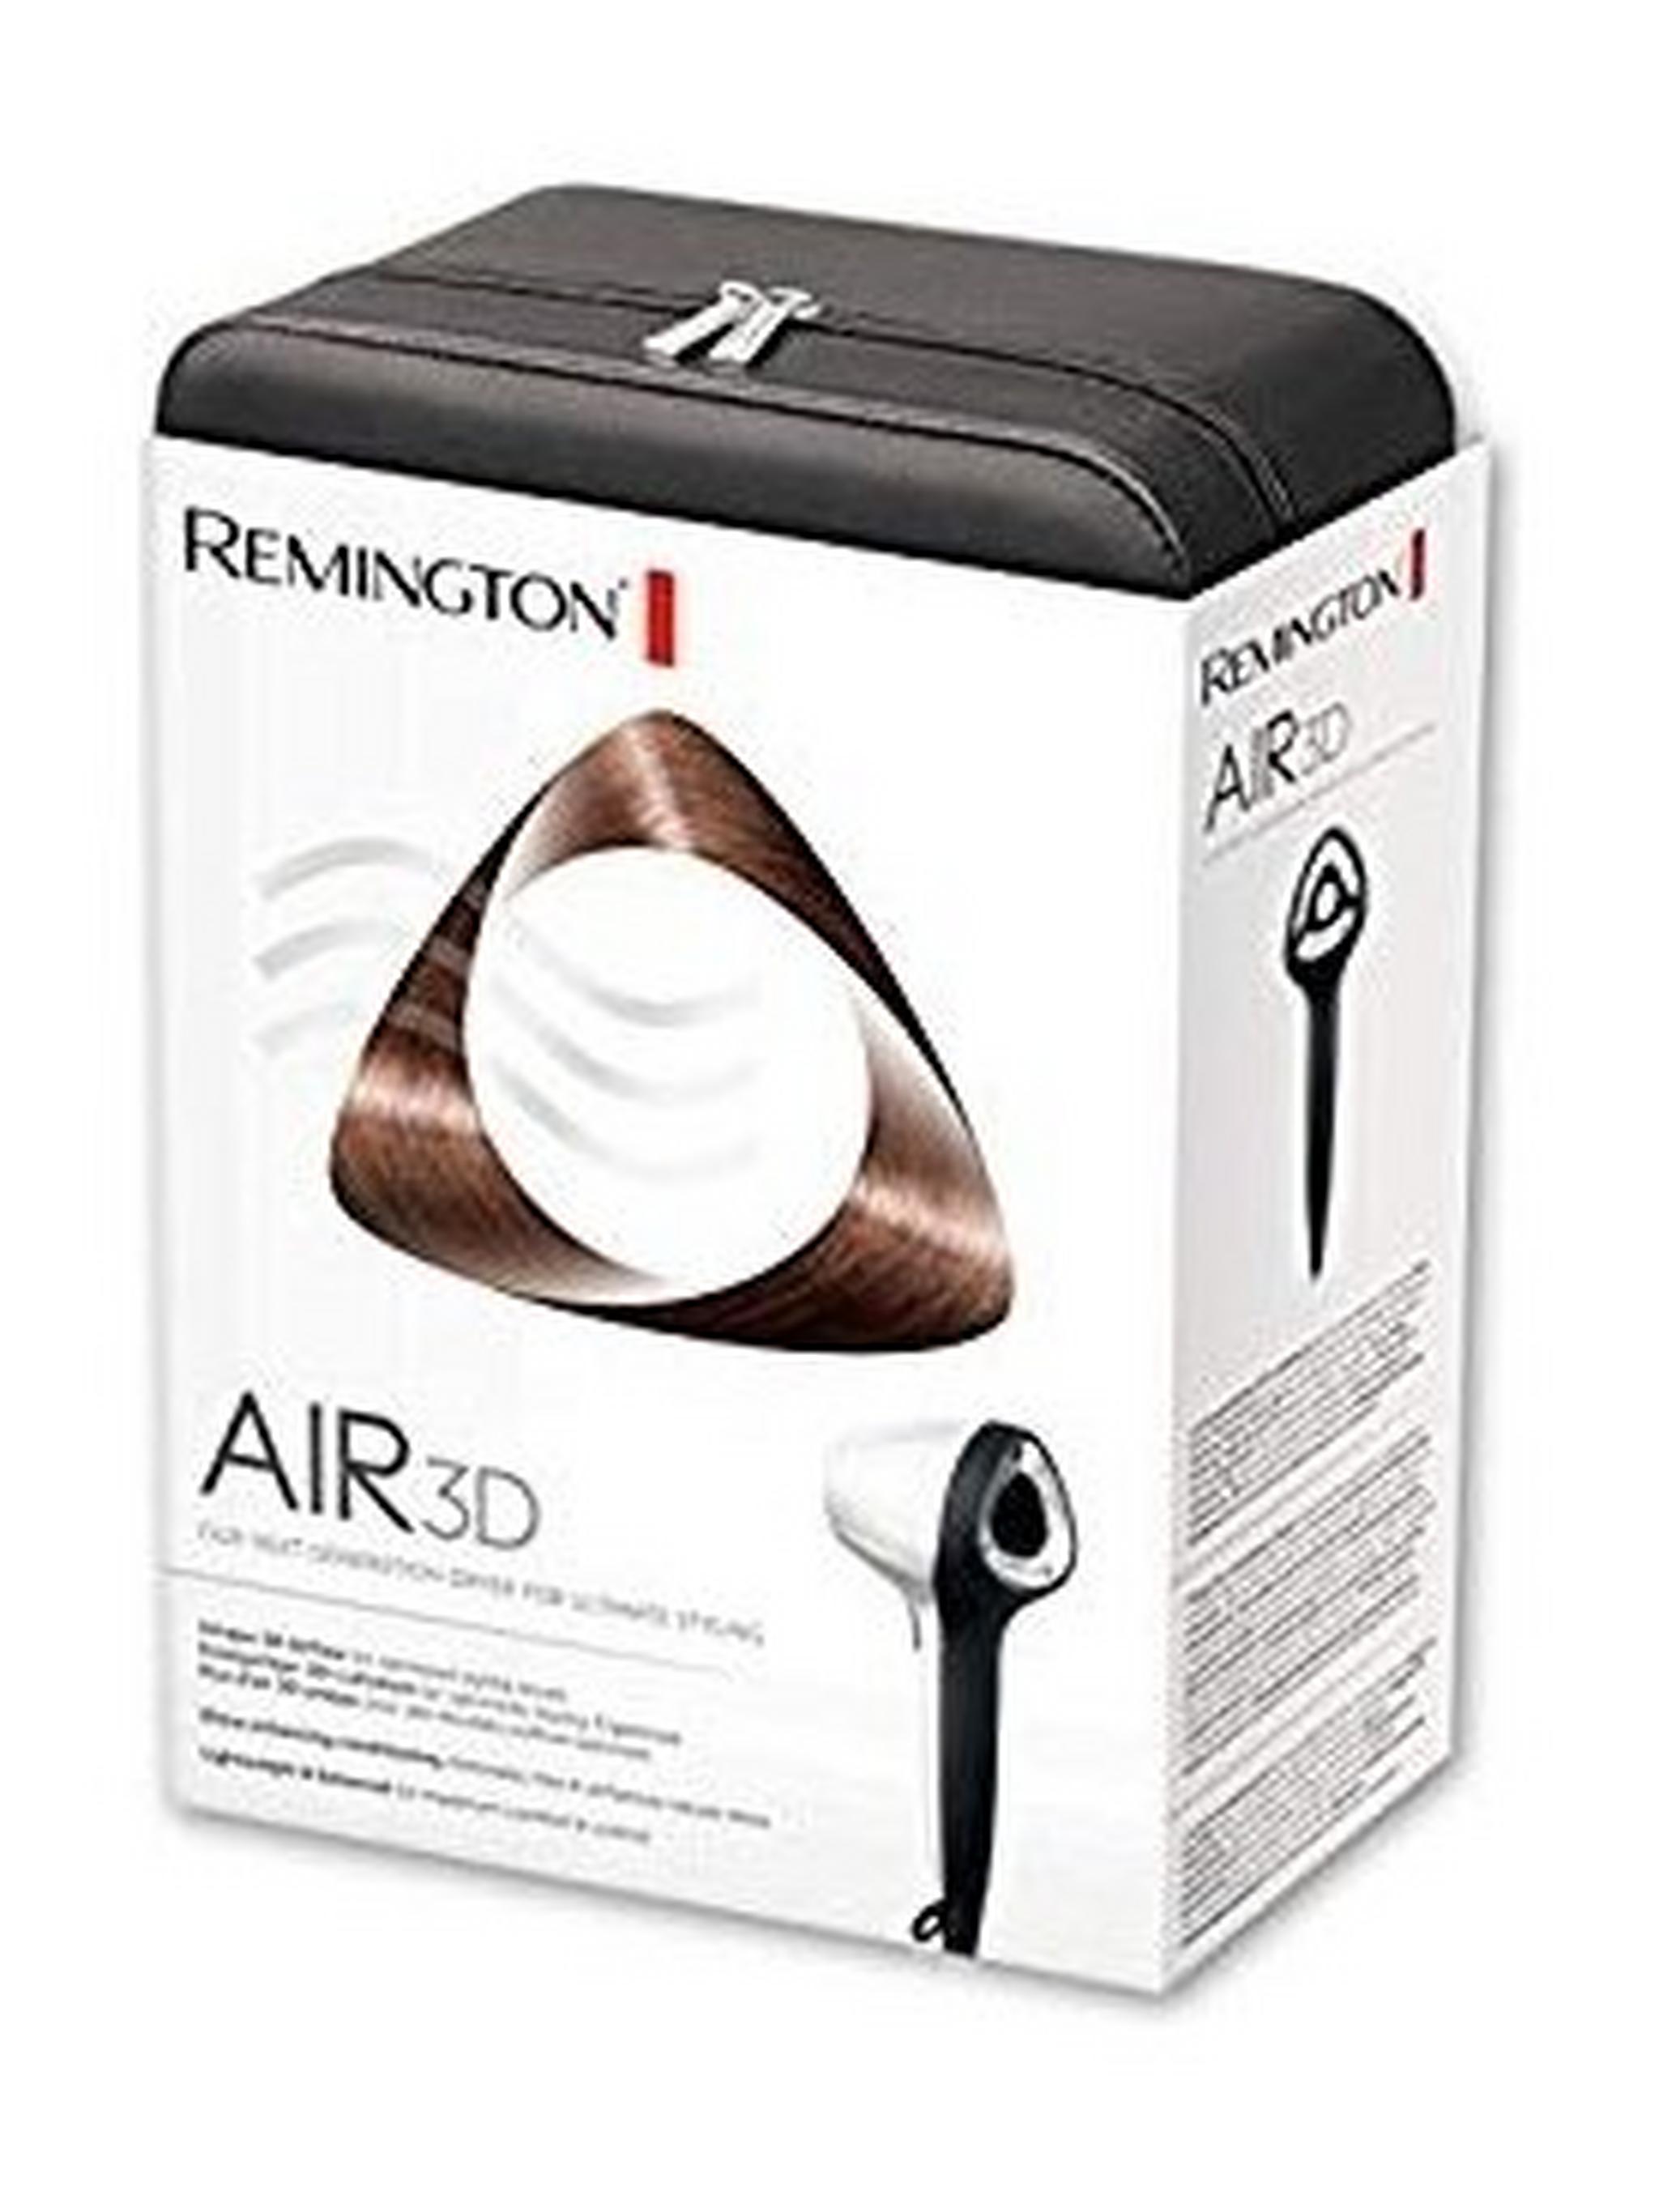 Remington Air 3D Hair Dryer - D7779